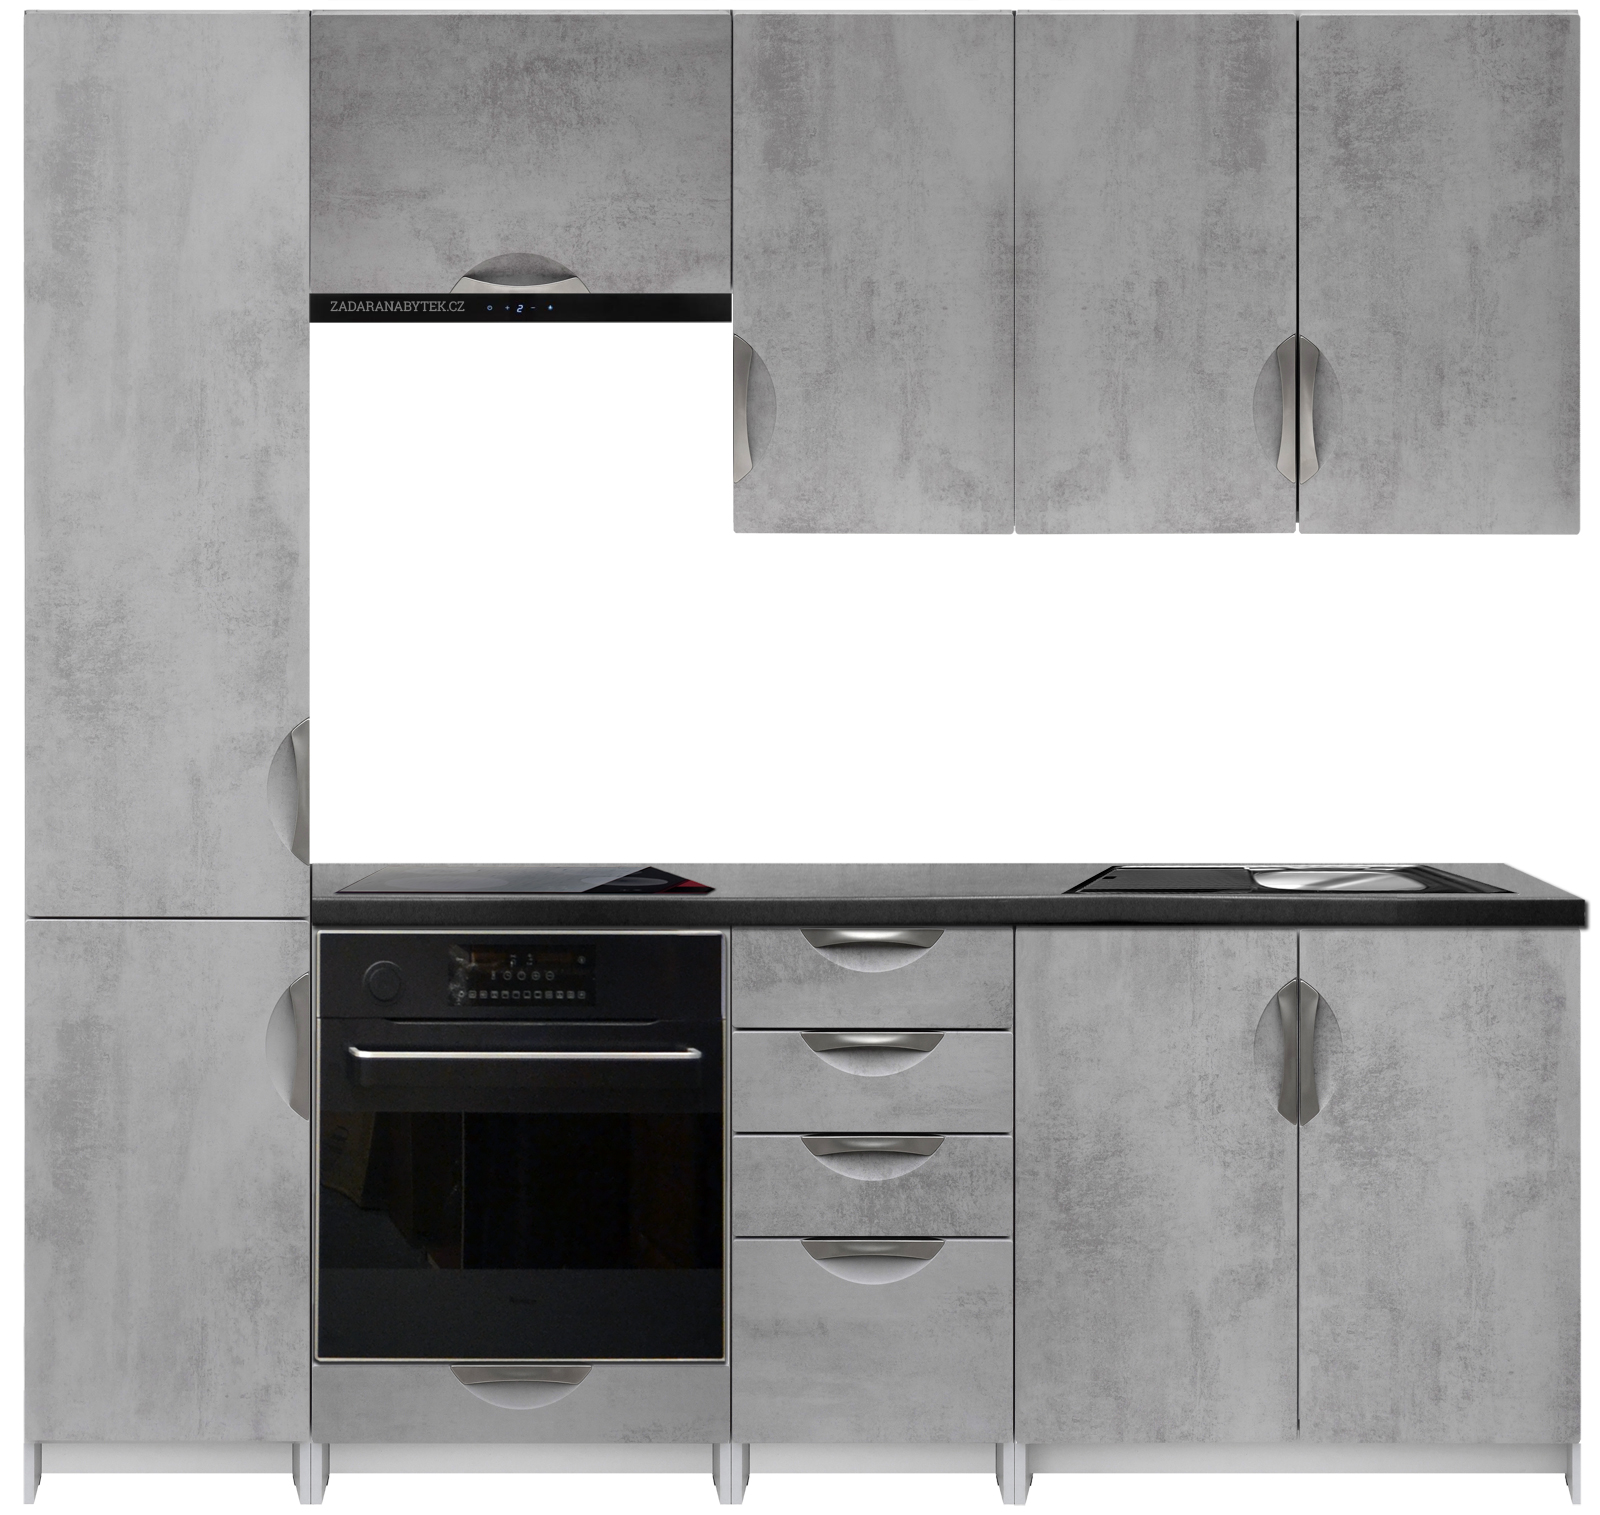 Kuchyňská linka 220 cm barva beton korpus šedý